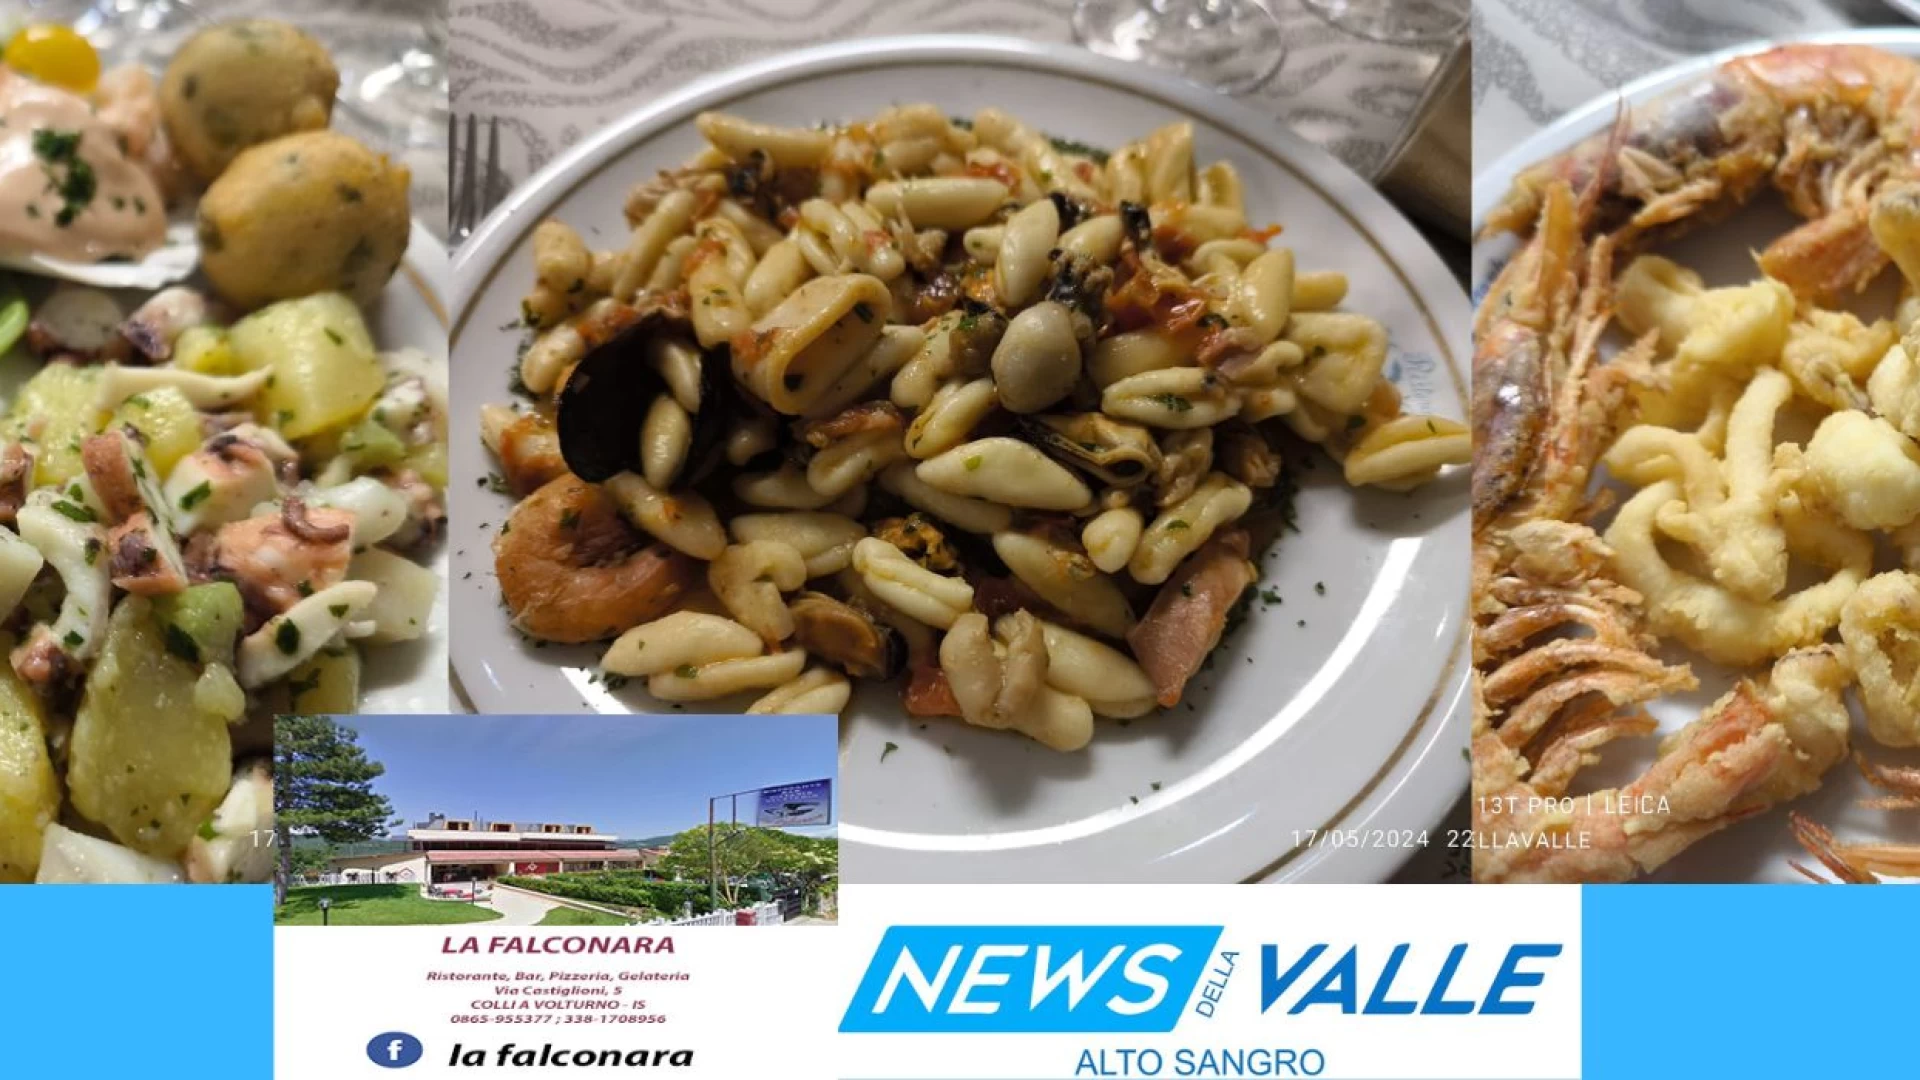 Colli a Volturno: continuano le serate a tema presso il Ristorante Pizzeria “La Falconara”: Venerdì 24 maggio nuova cena con menu’ di pesce.